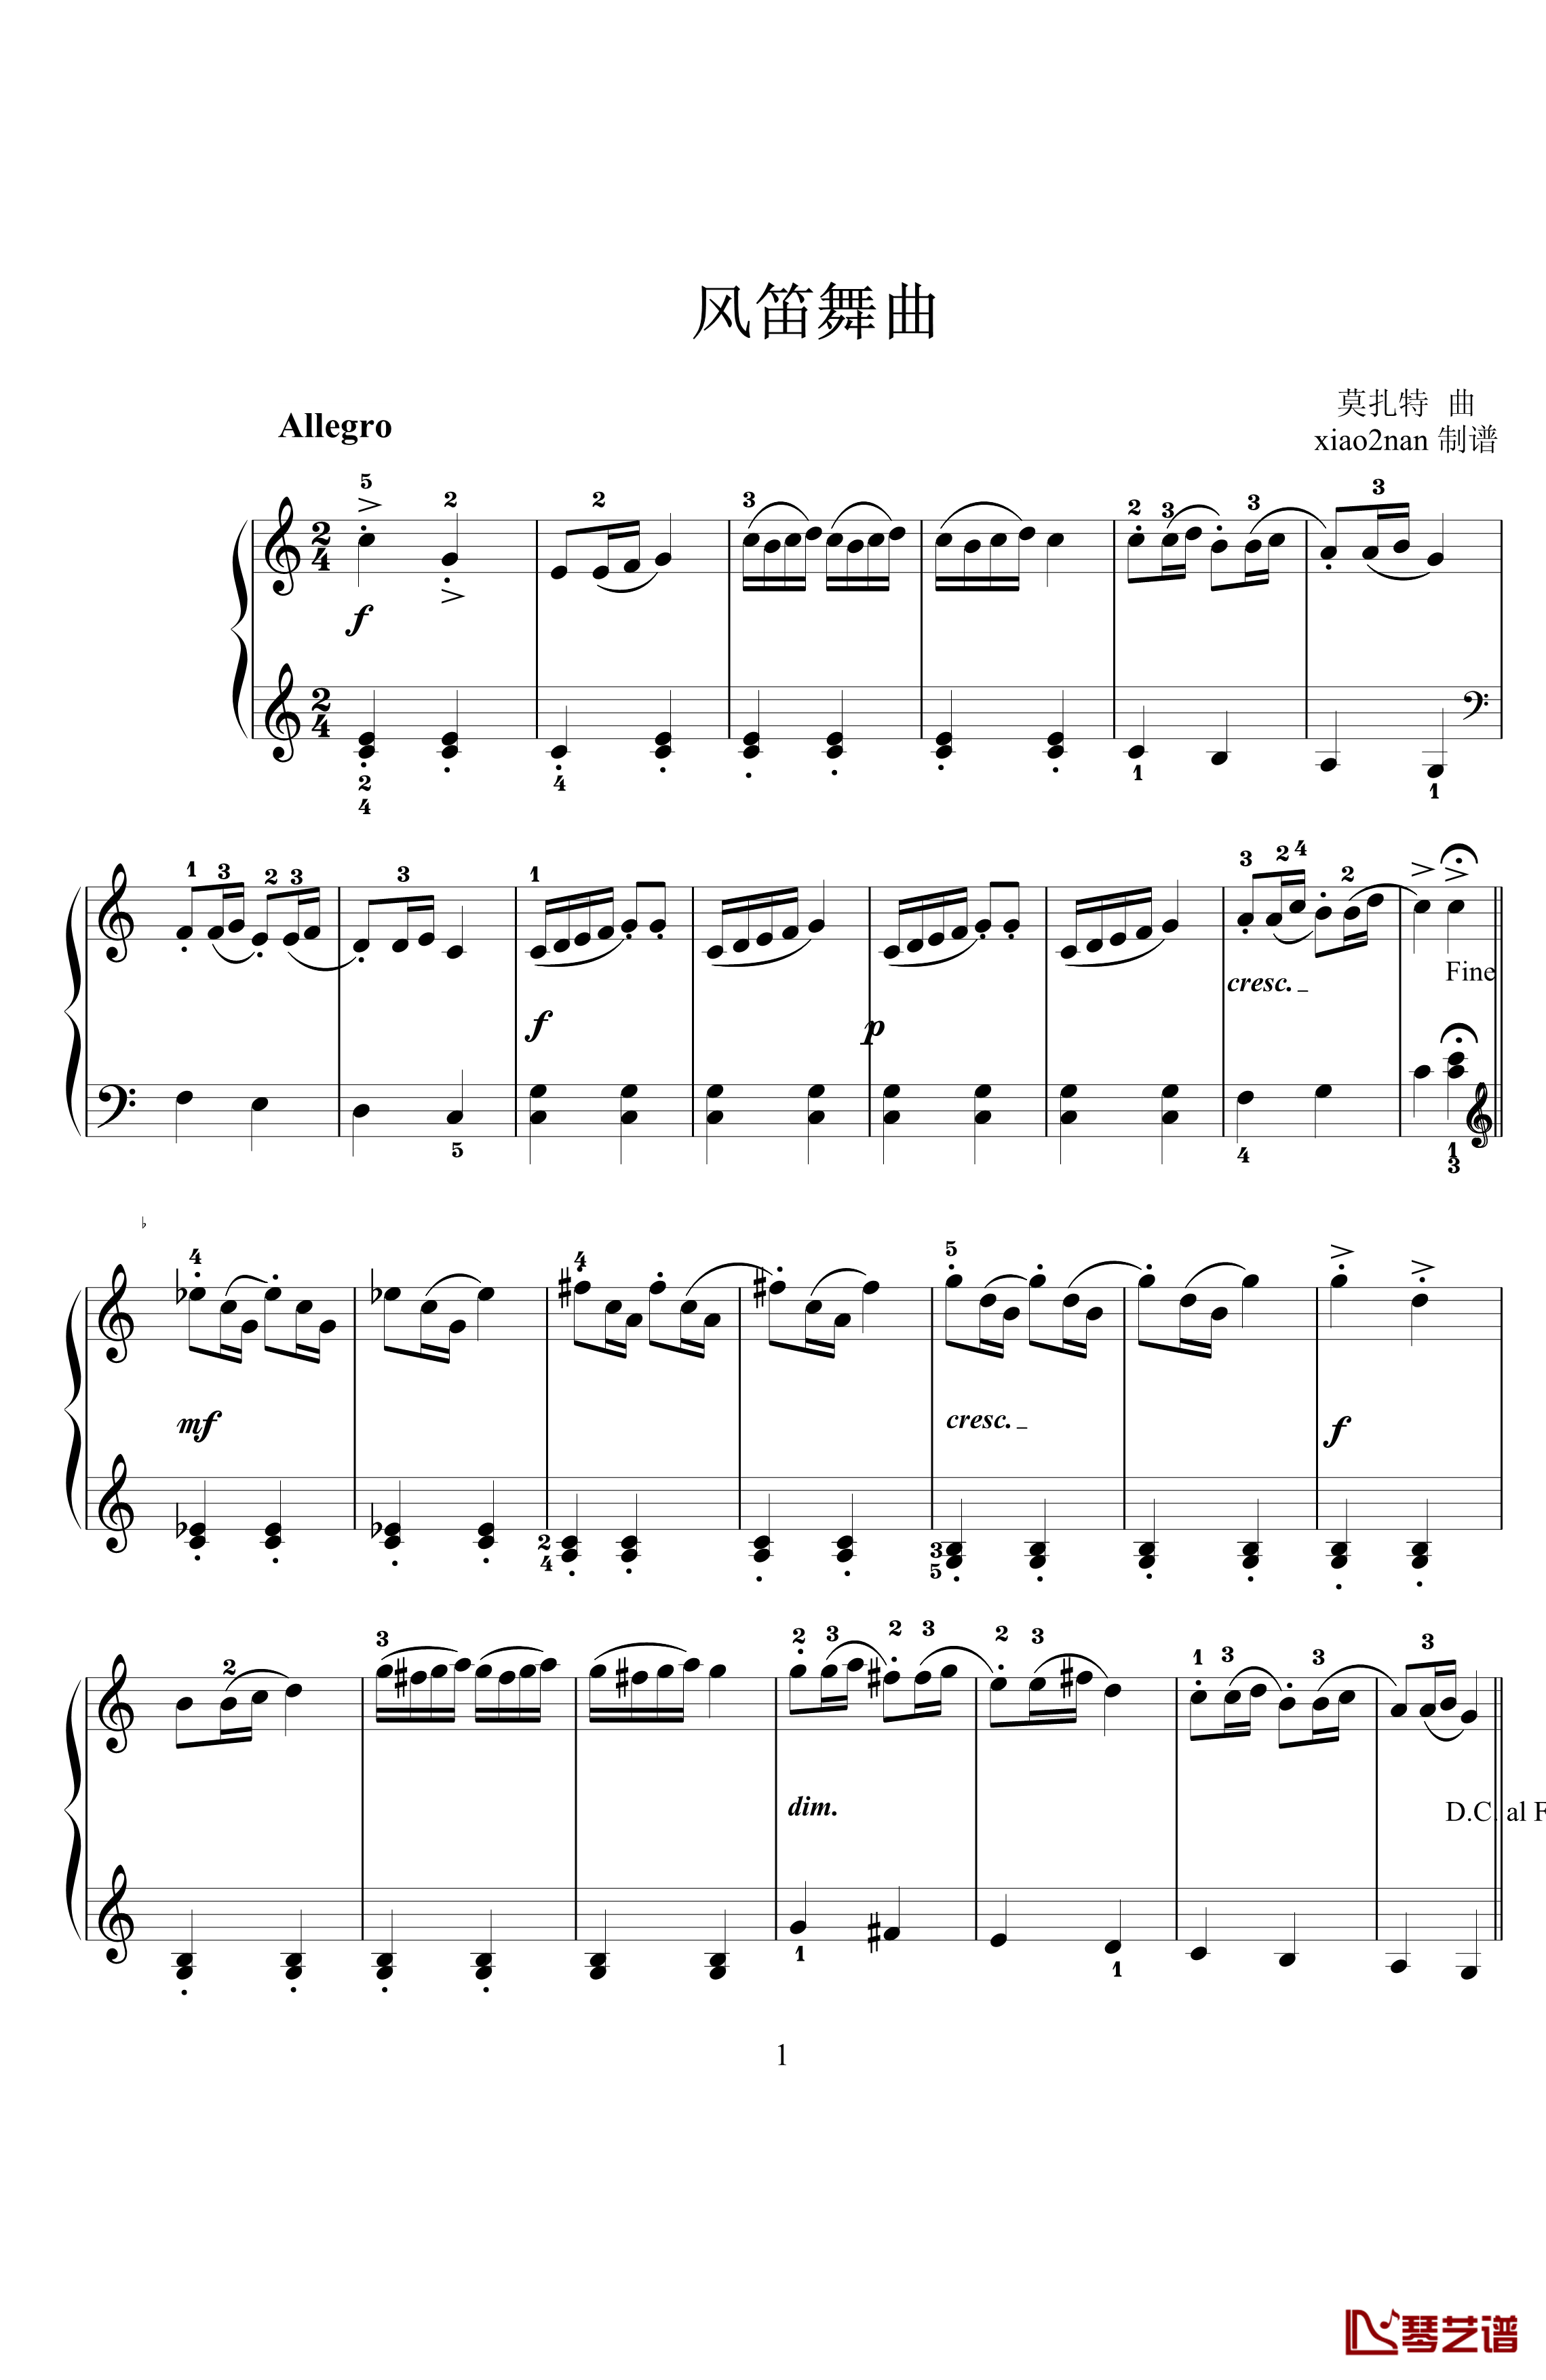 风笛舞曲钢琴谱-莫扎特1